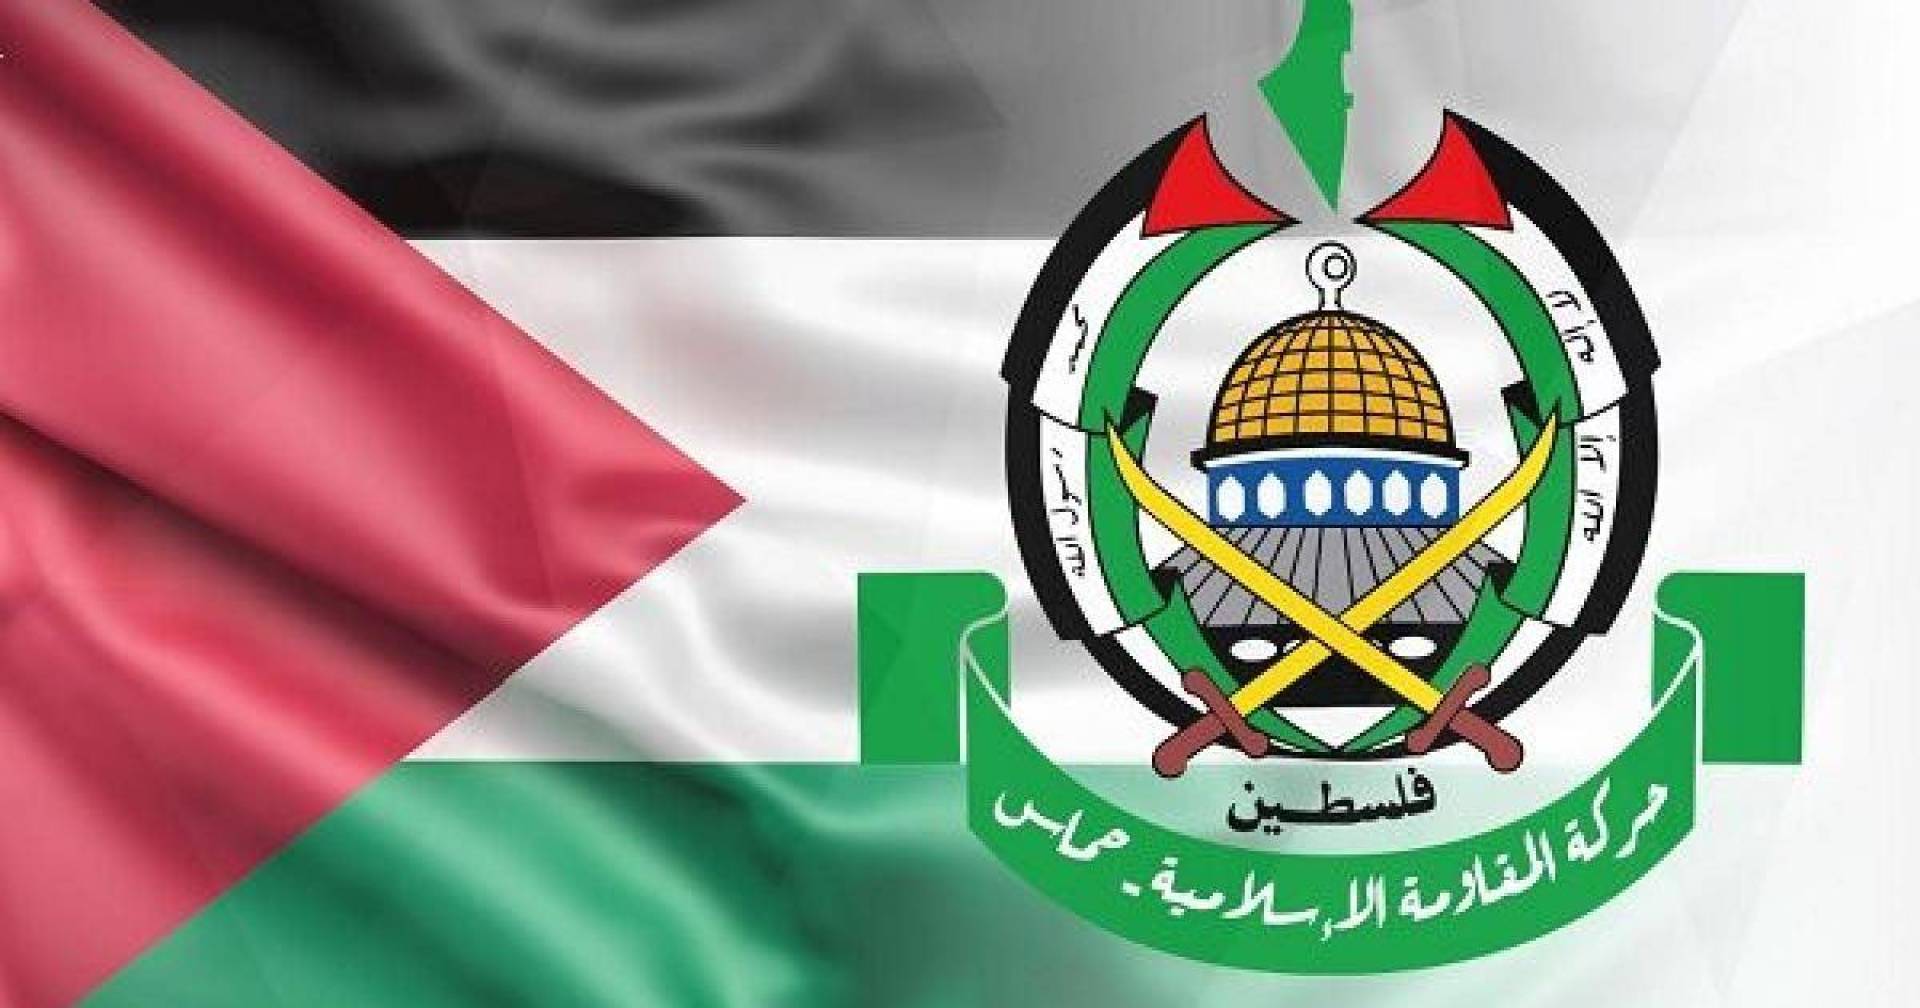 حماس: نرفض أي تواجد عسكري لأي قوة كانت على الأراضي الفلسطينية